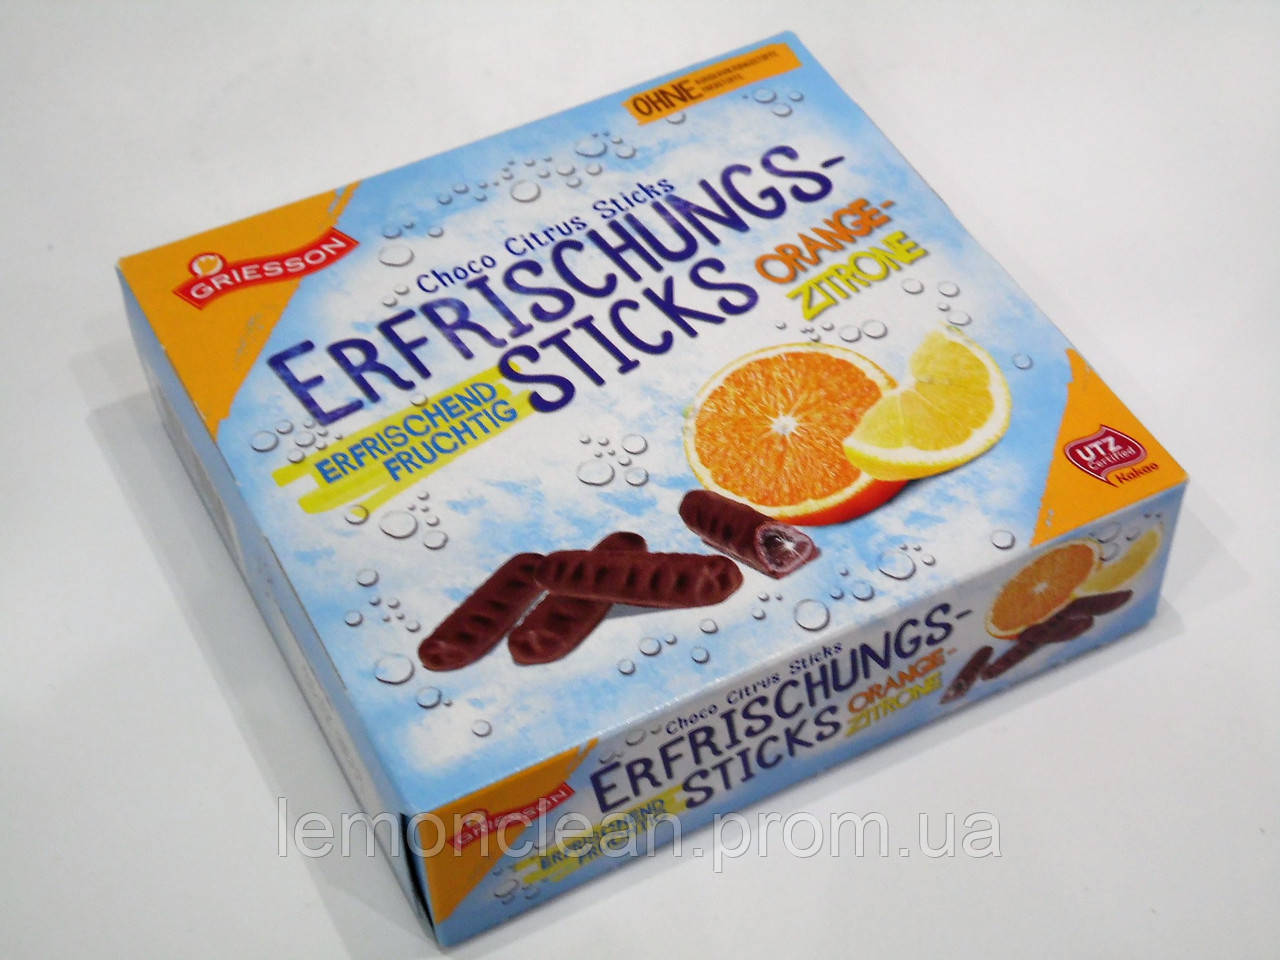 Шоколадные палочки с фруктовым соком Griesson Erfrischungs-sticks 150 